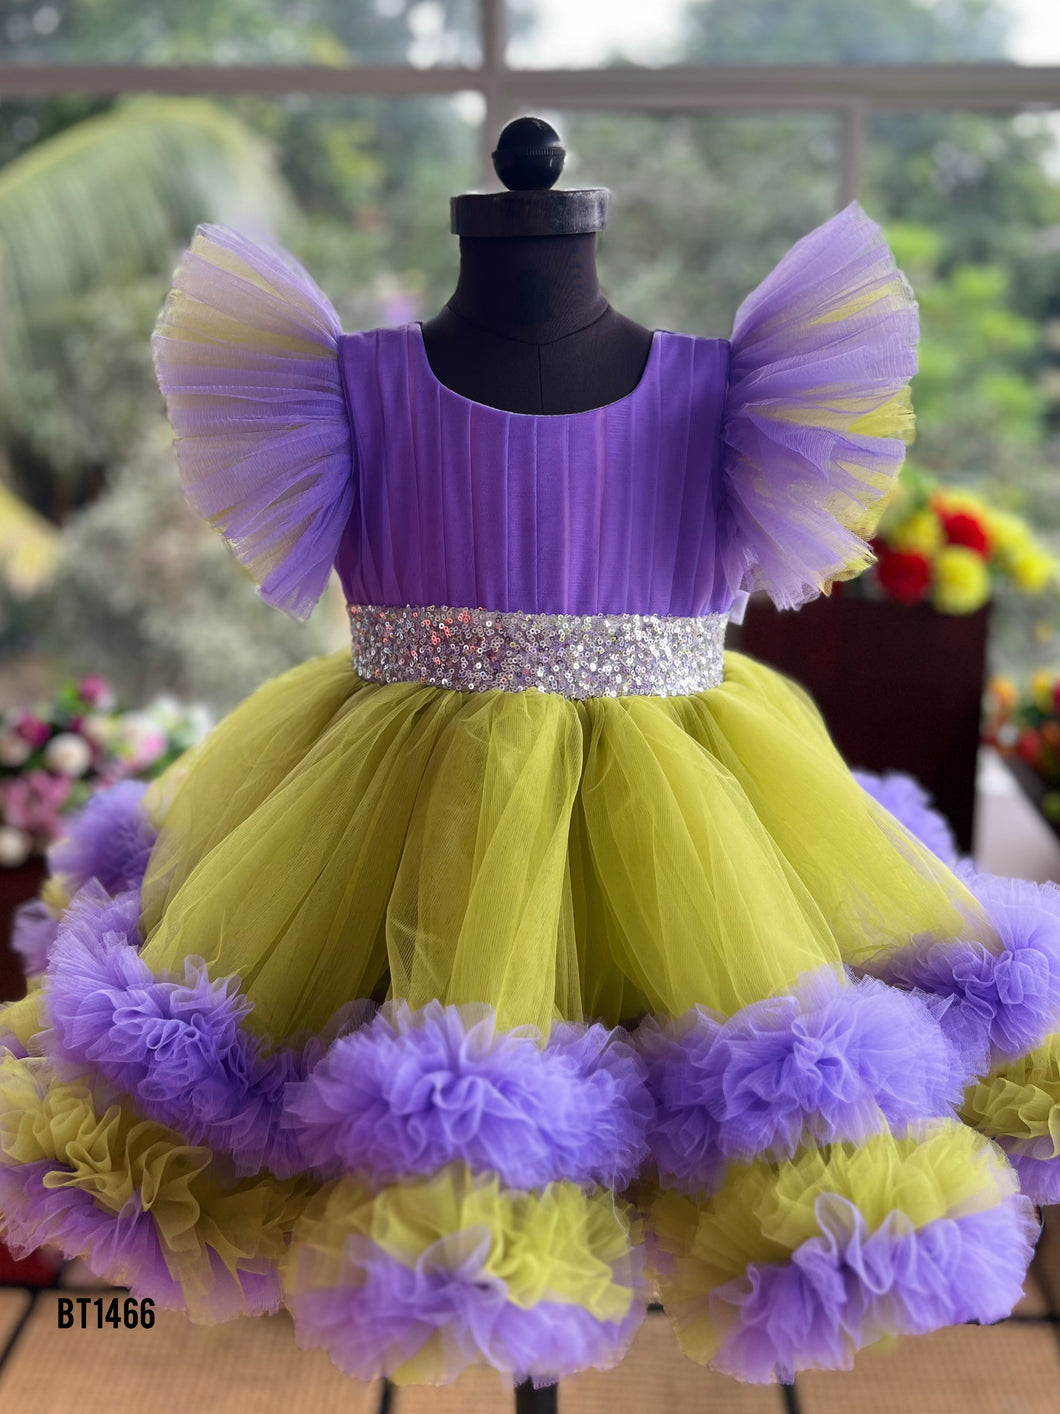 BT1466 Enchanted Evening Princess Dress for Babies